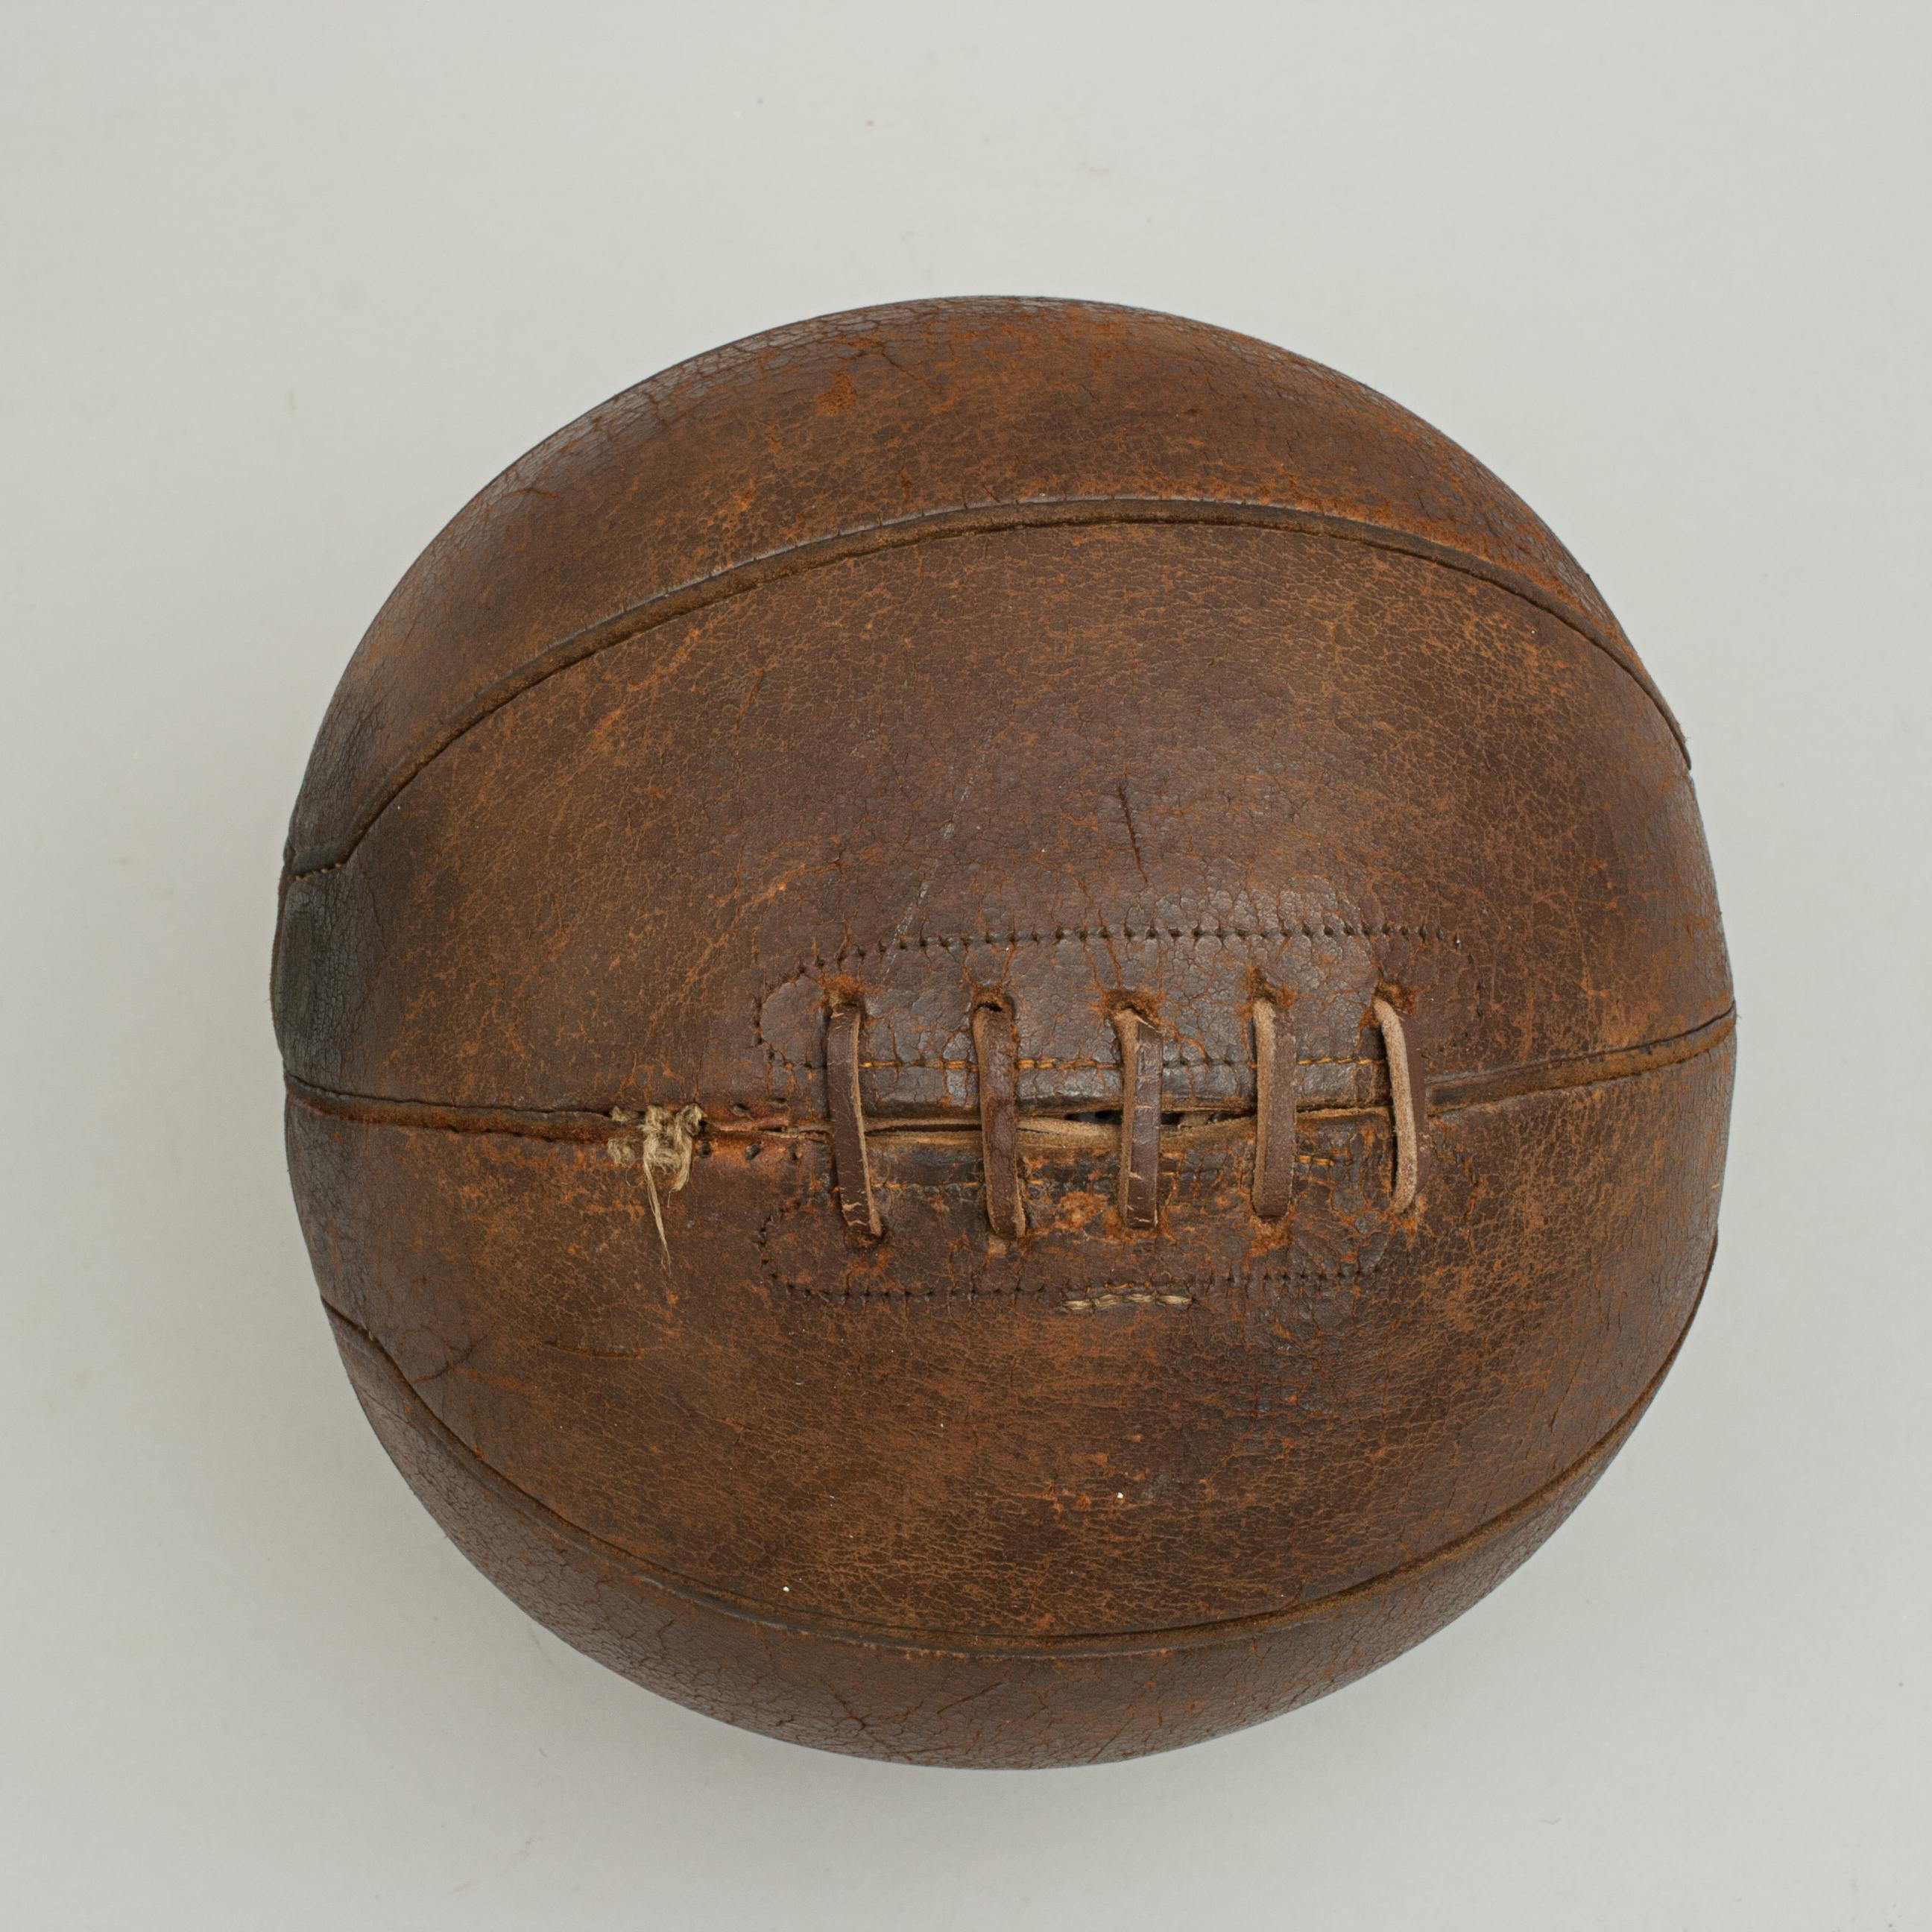 antique basketball